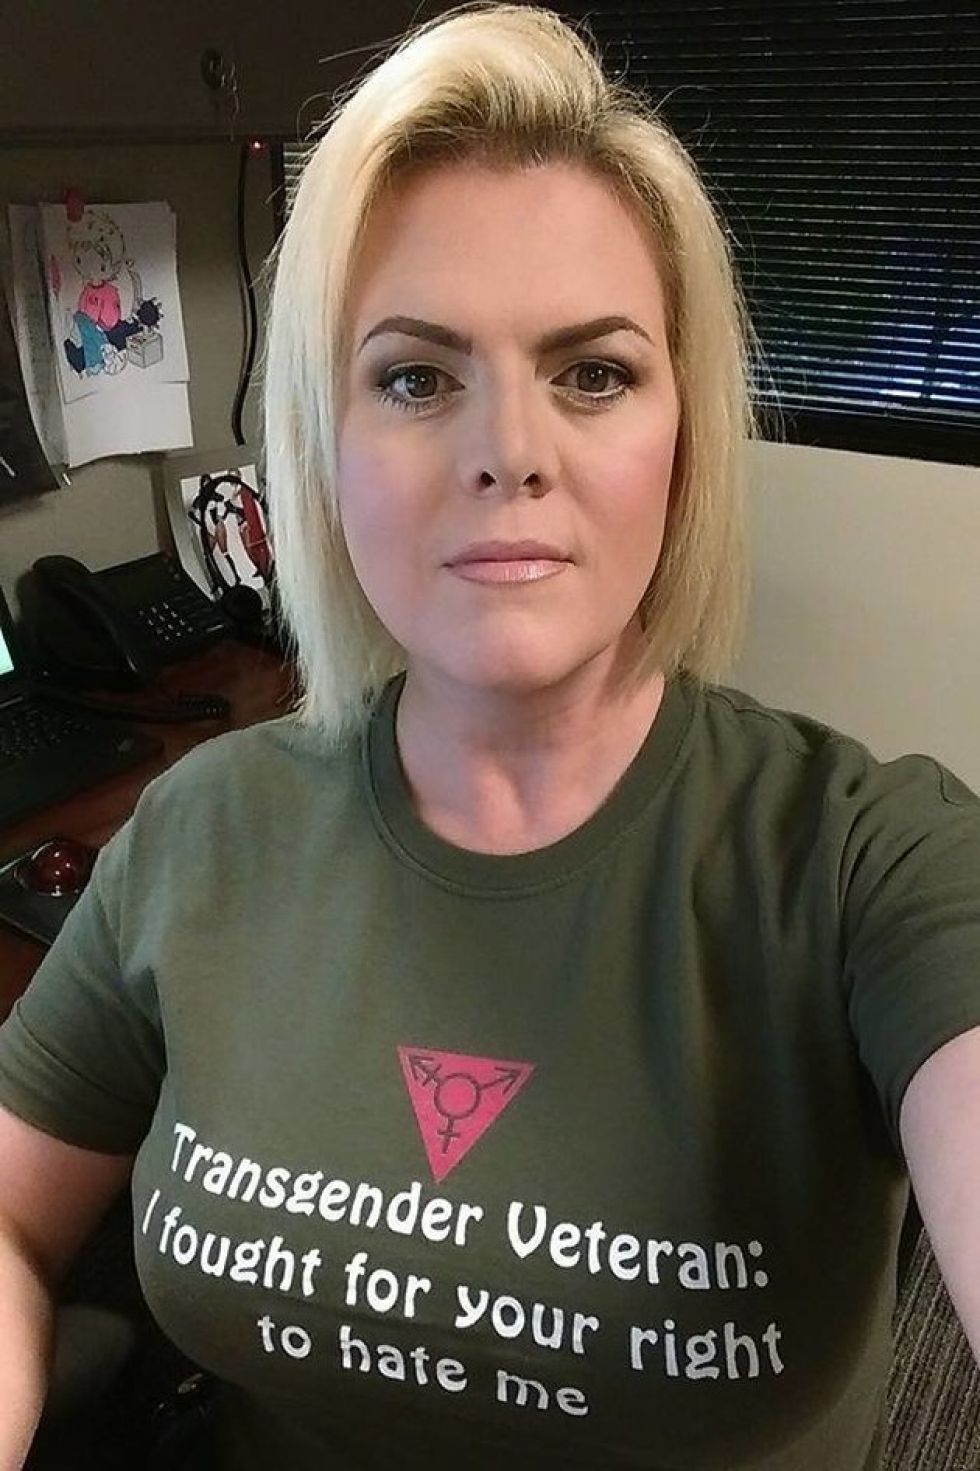 transgender veteran i fought for your right - Transgender Veteran. fought for your right to hate me